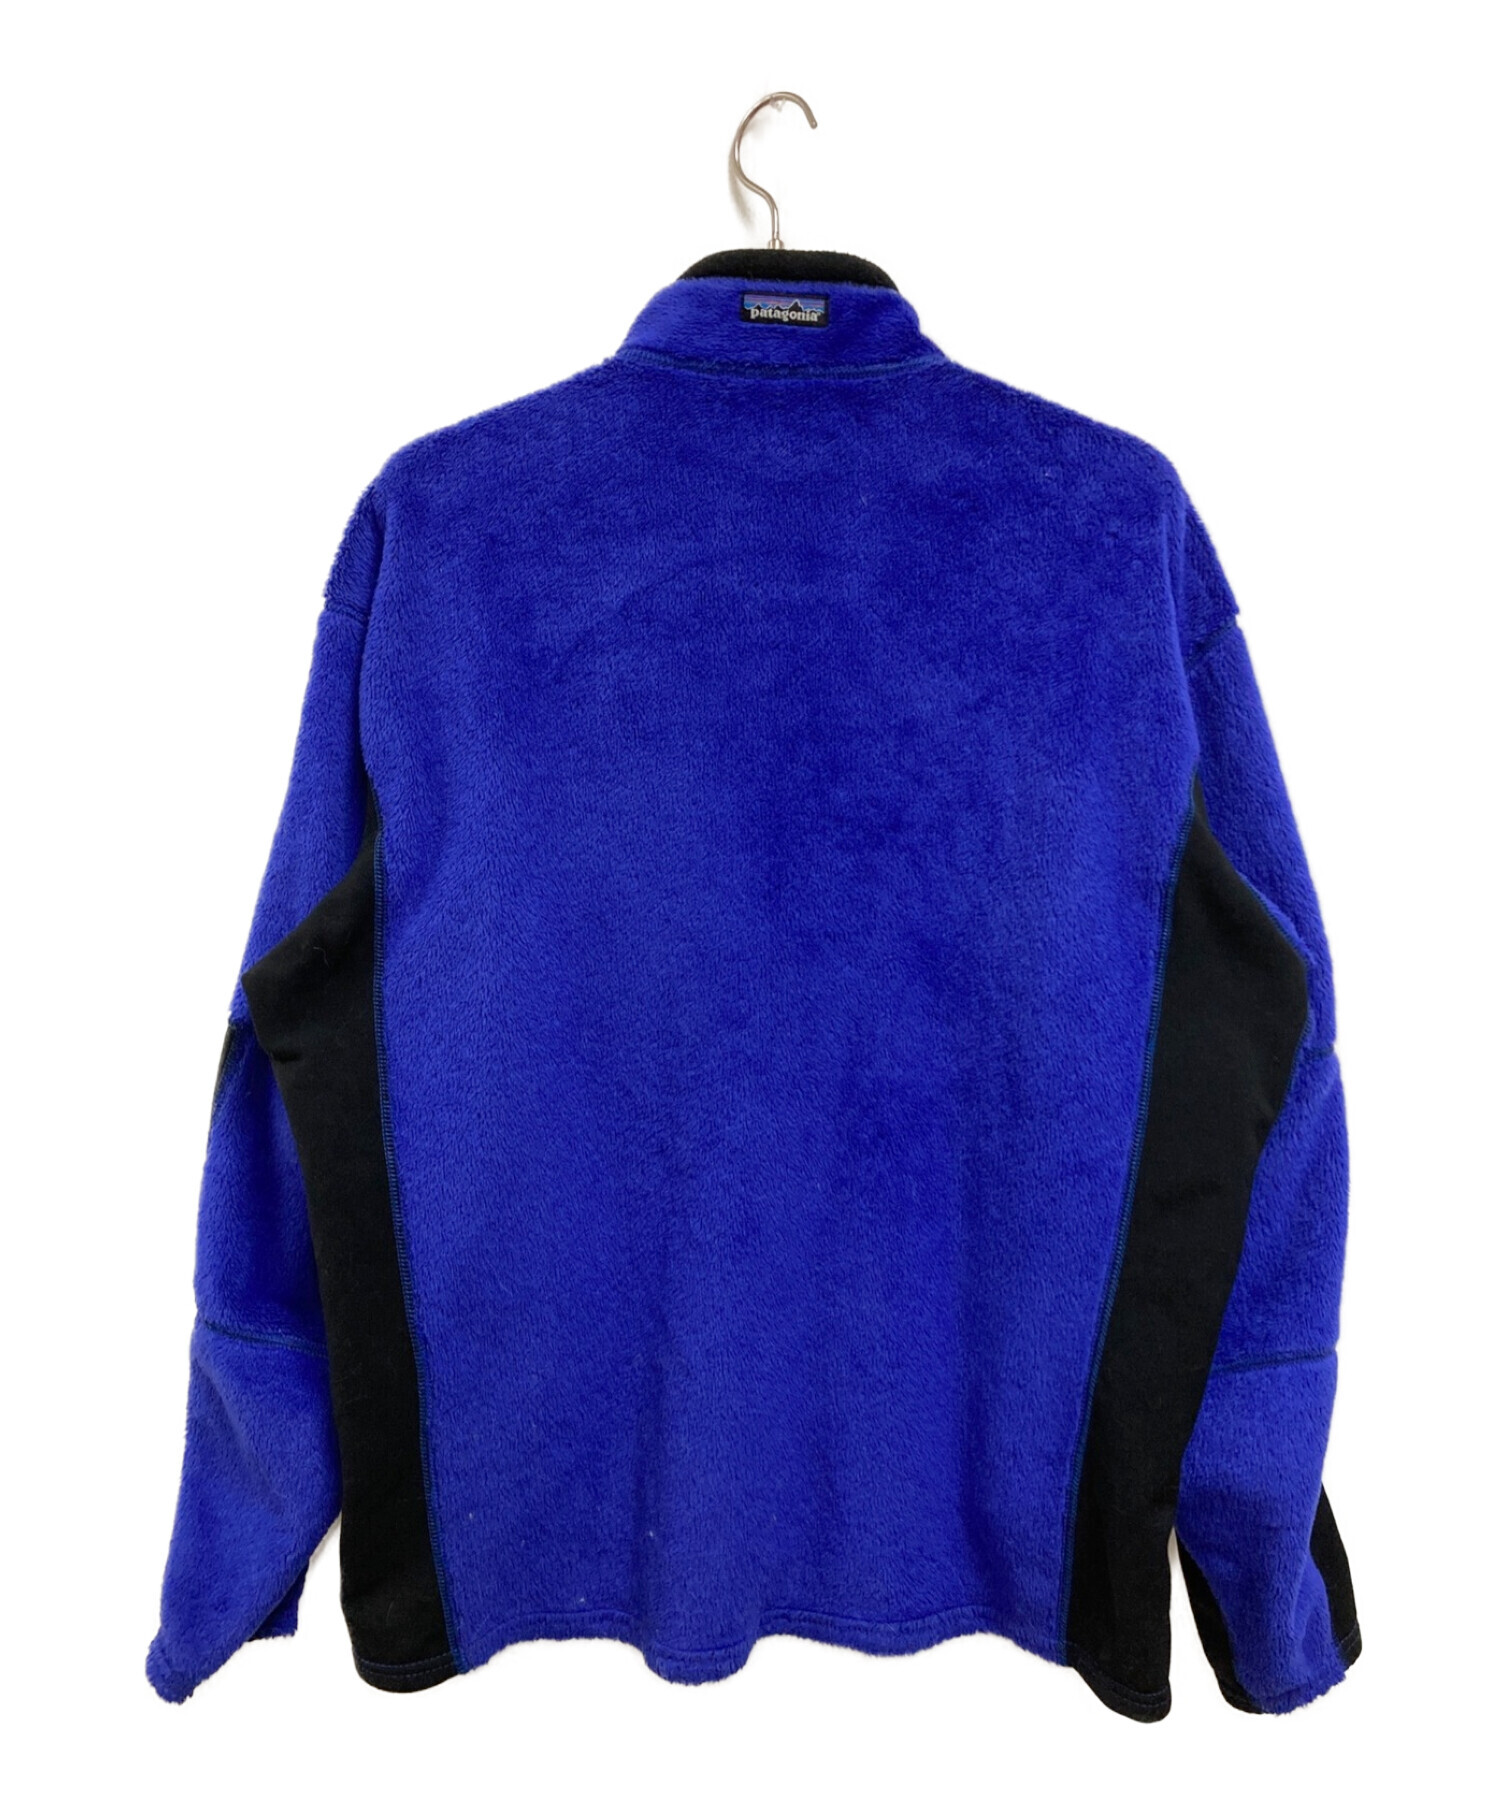 Patagonia (パタゴニア) R2 Fleece Jacket ブルー×ブラック サイズ:L